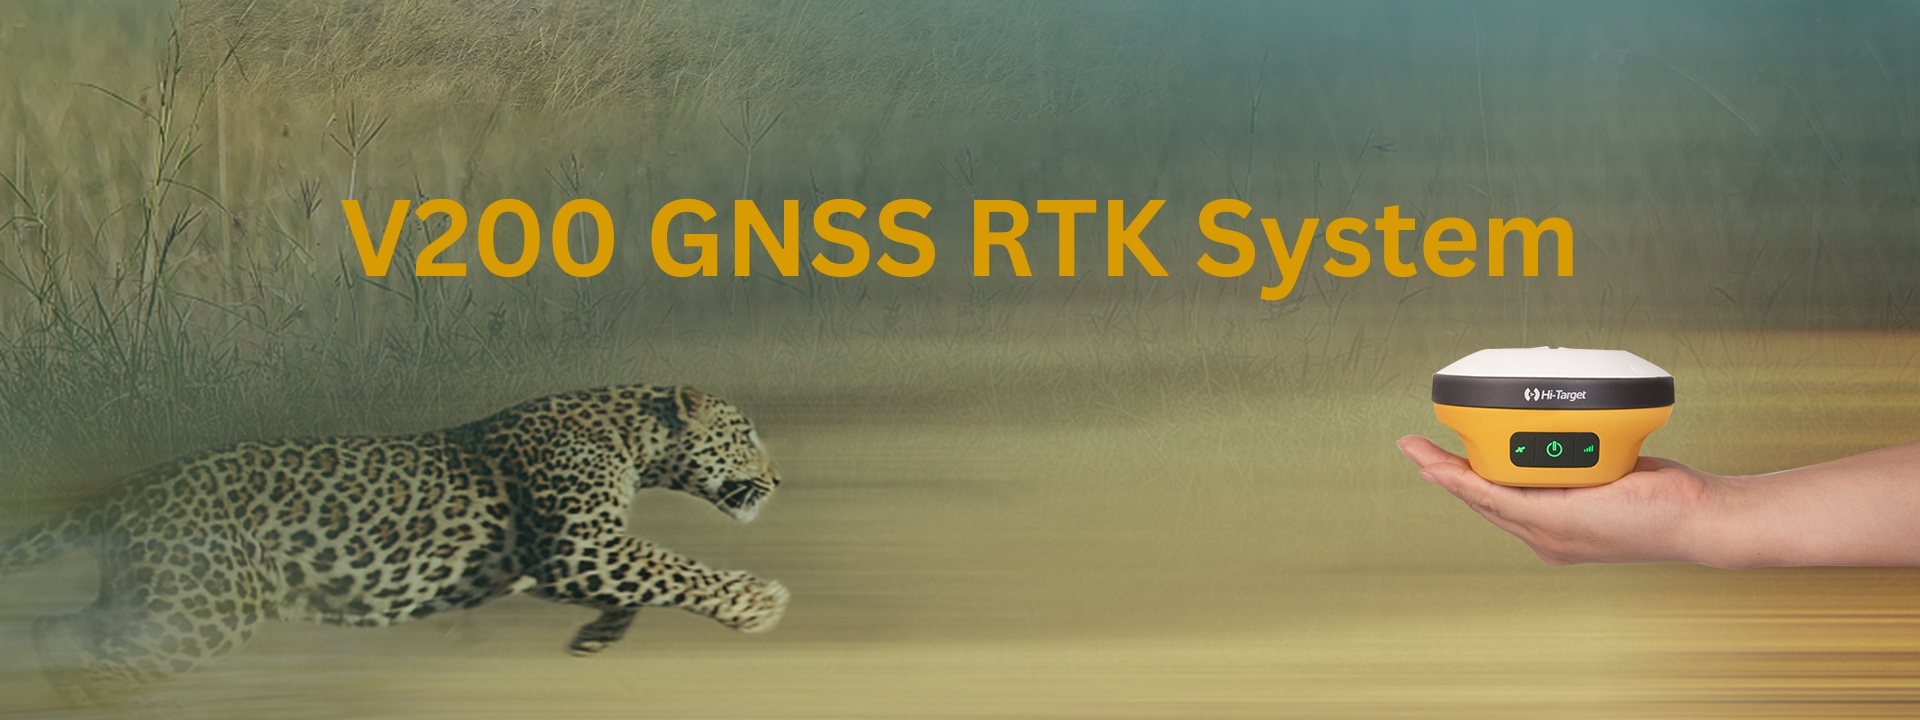 V200 GNSS RTK System